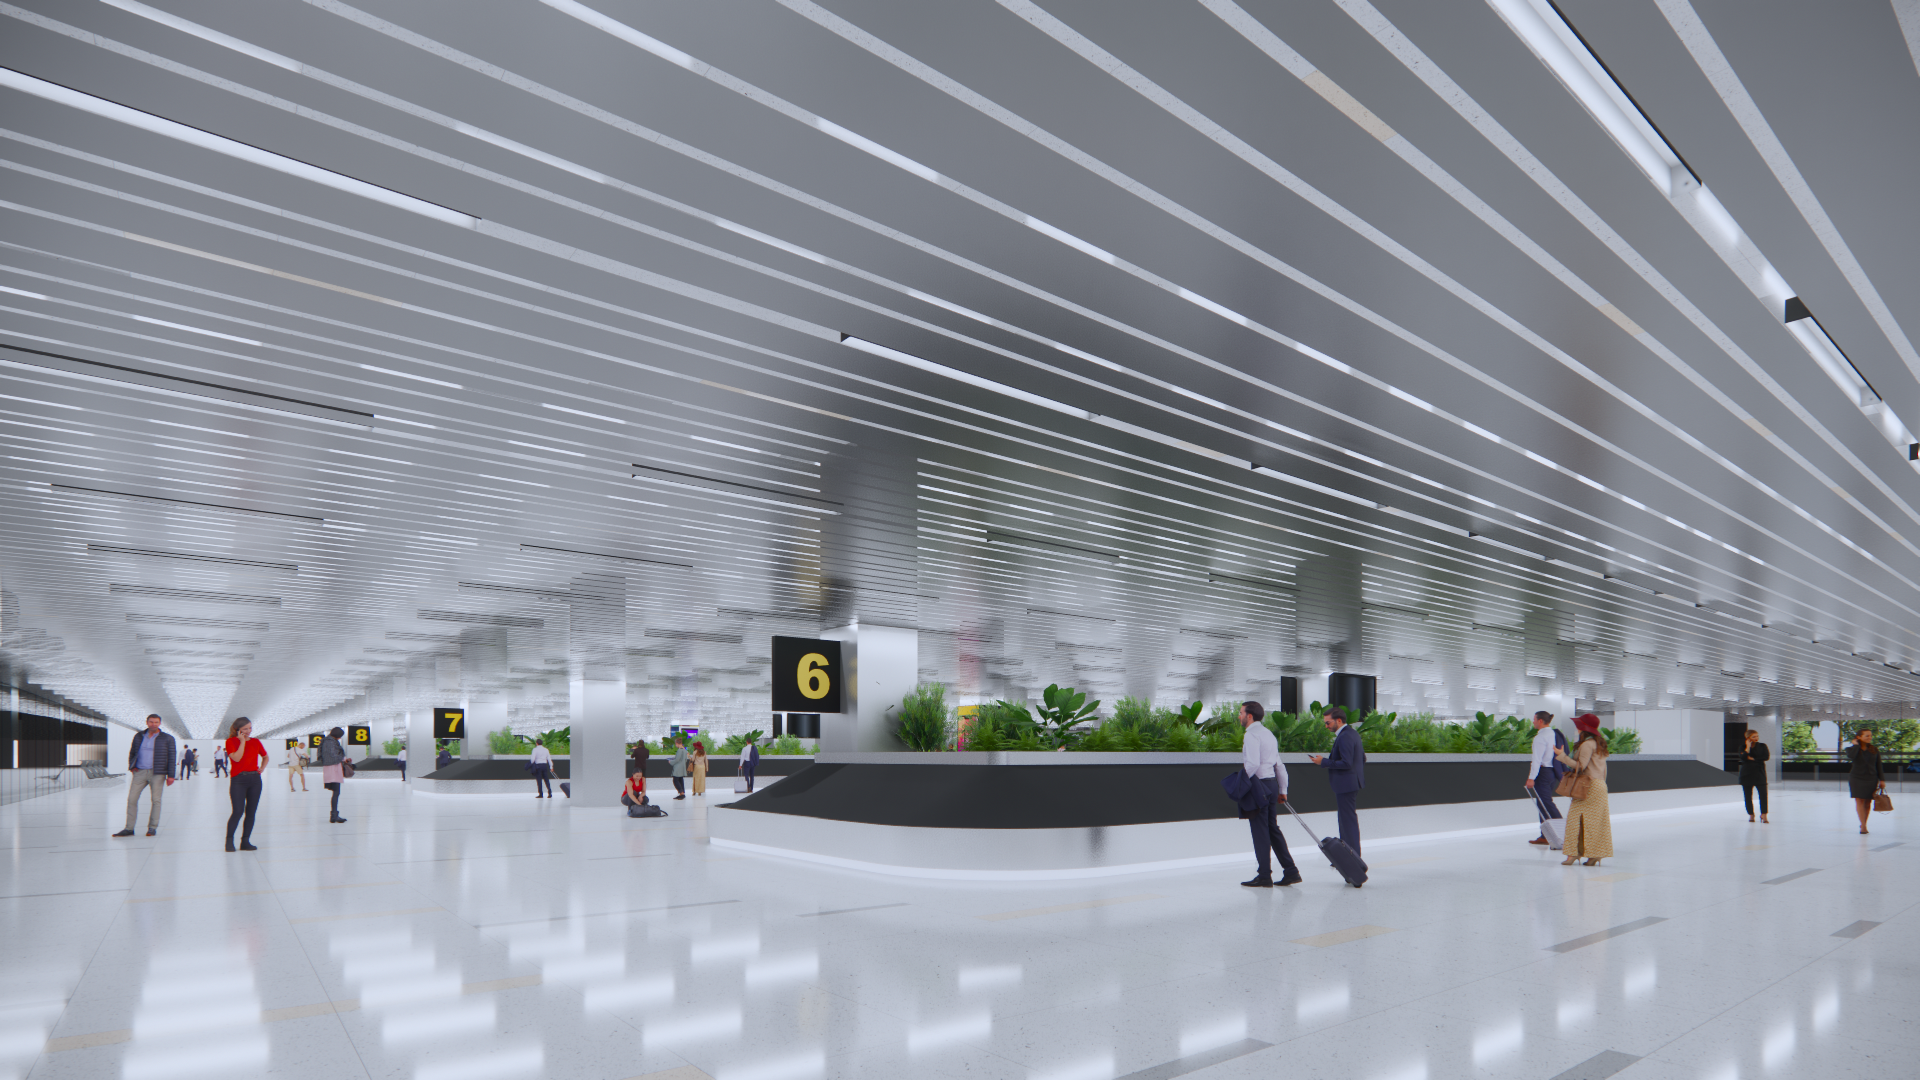 Hé lộ thiết kế nhà ga T3 sân bay Tân Sơn Nhất có gì đặc biệt? - Ảnh 8.